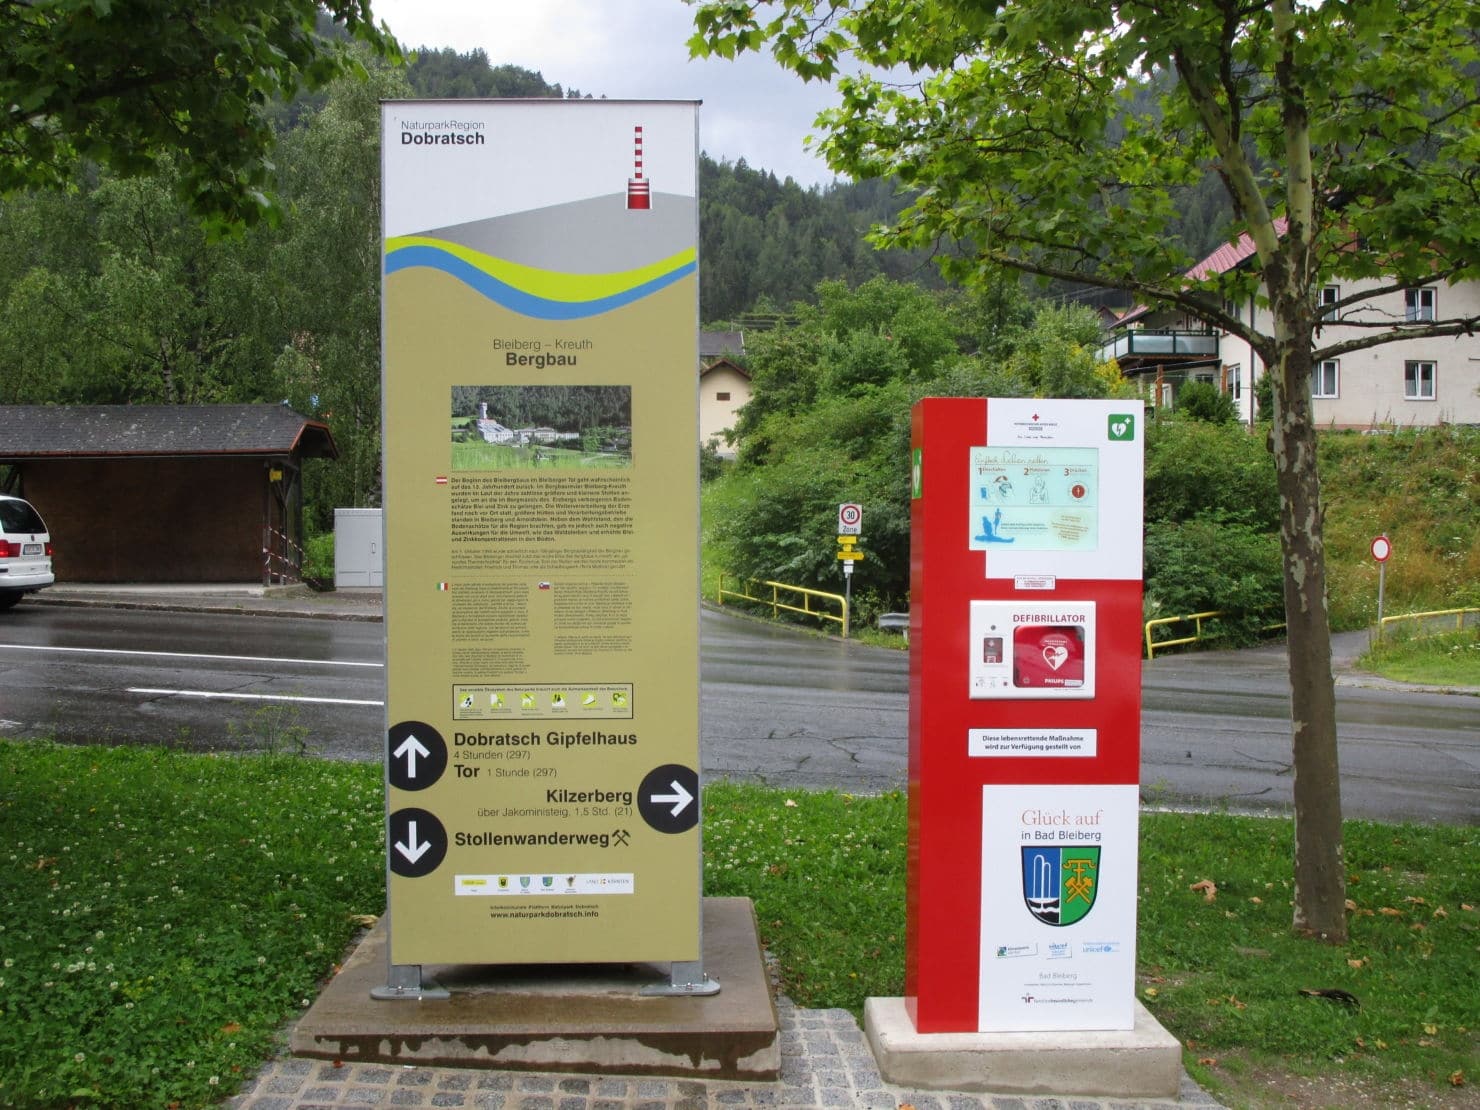 In ganz Kärnten sind die Defi-Säulen zu finden. So auch in Bad Bleiberg.